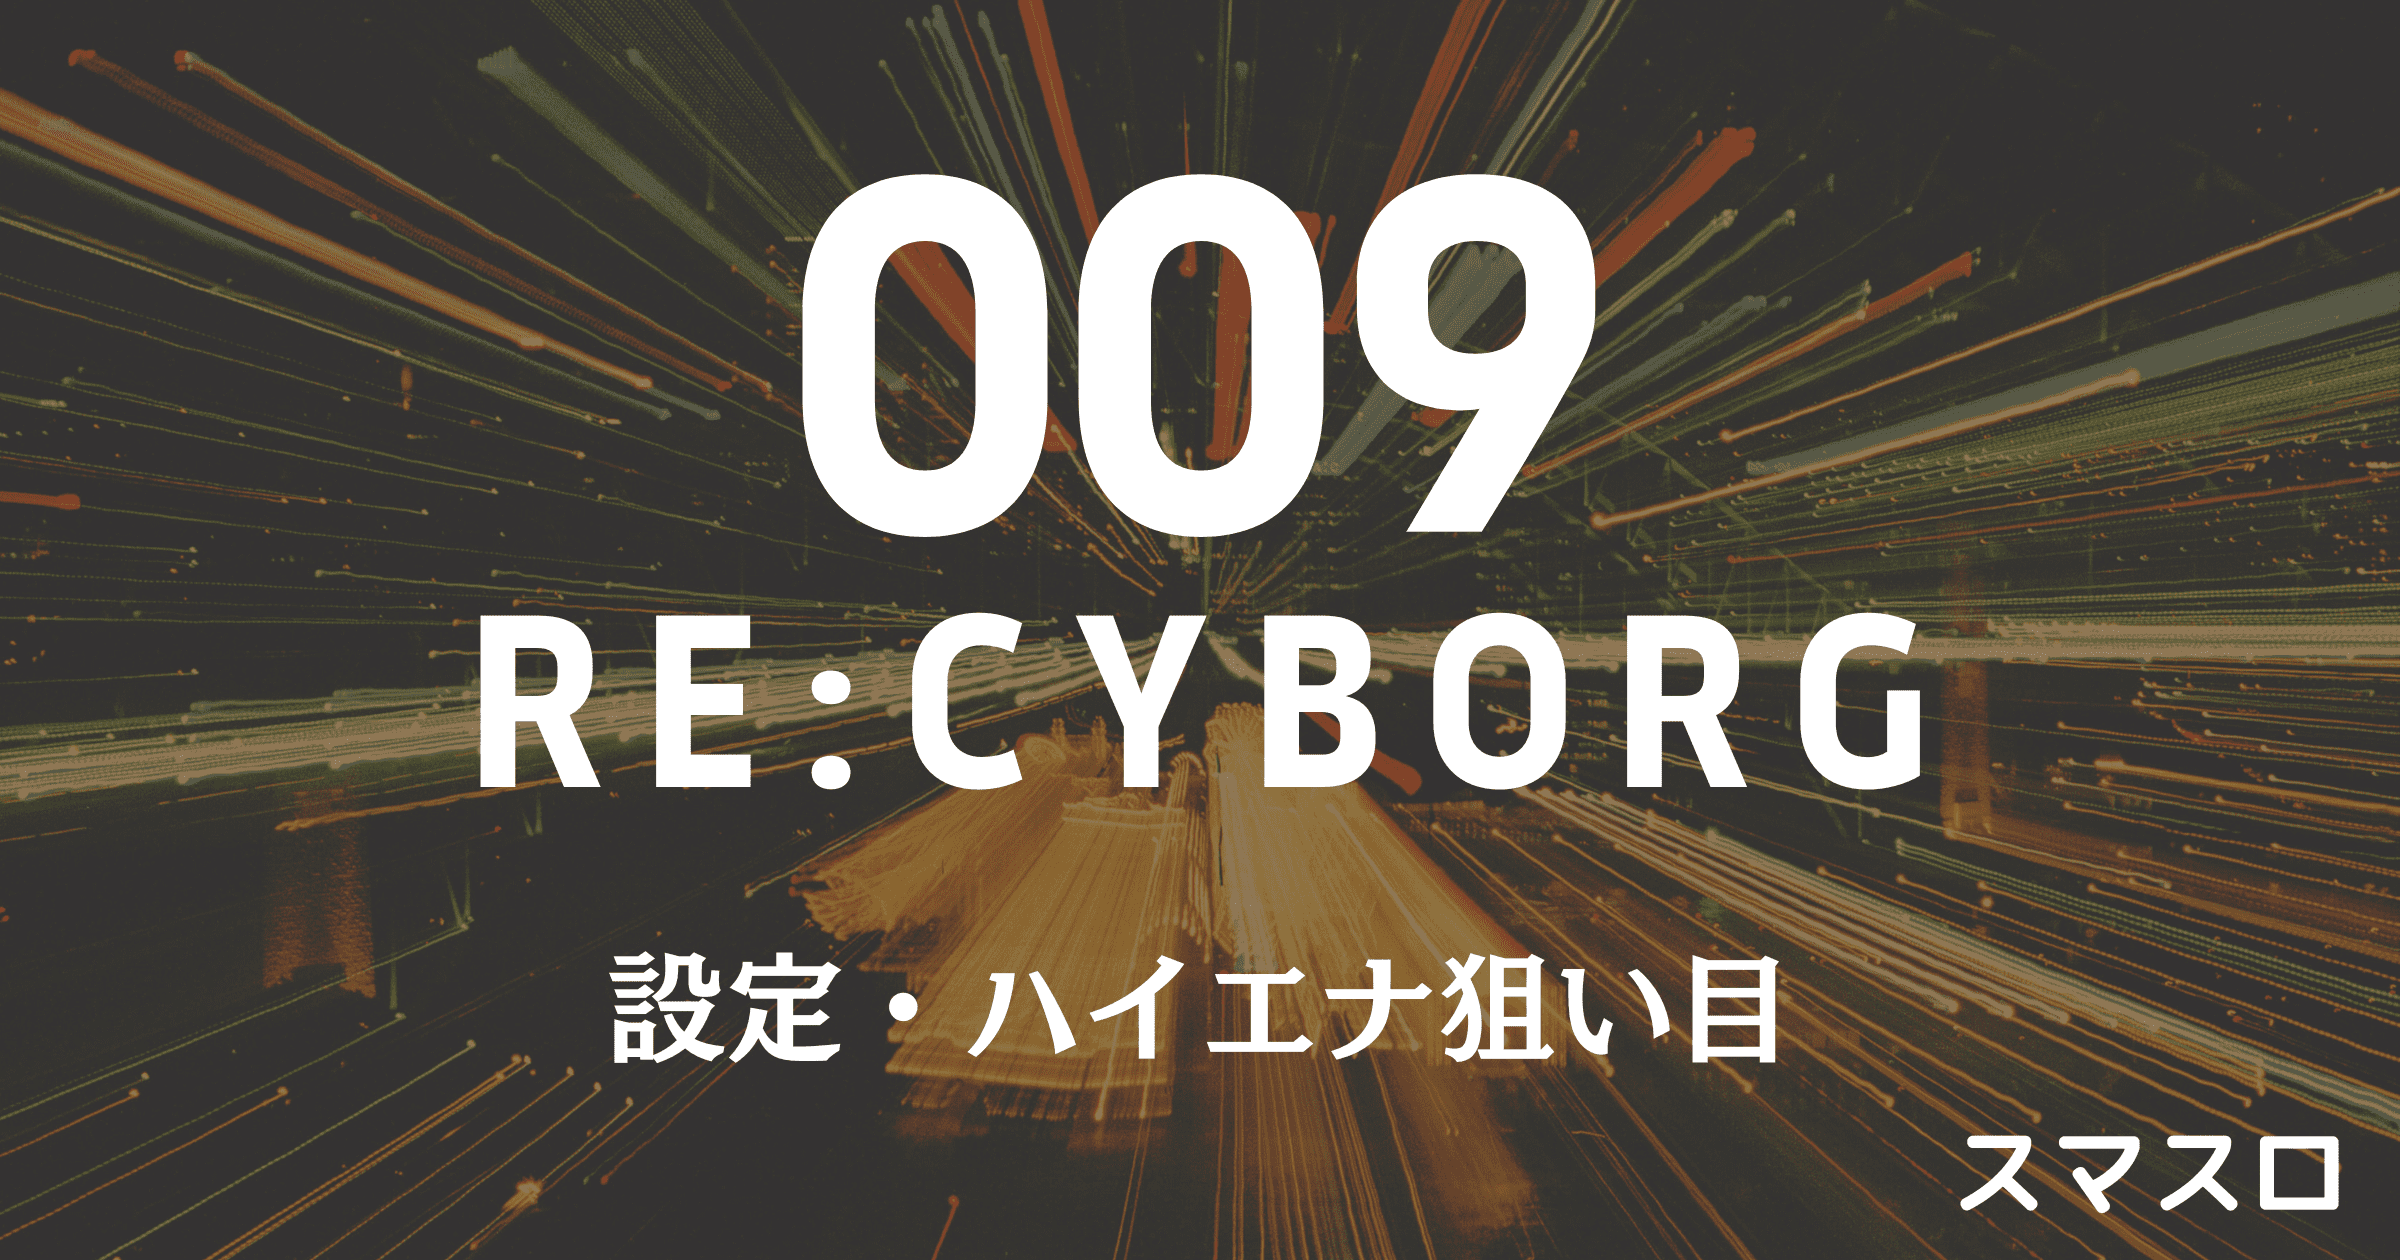 009 RE:CYBORG 設定・ハイエナ狙い目